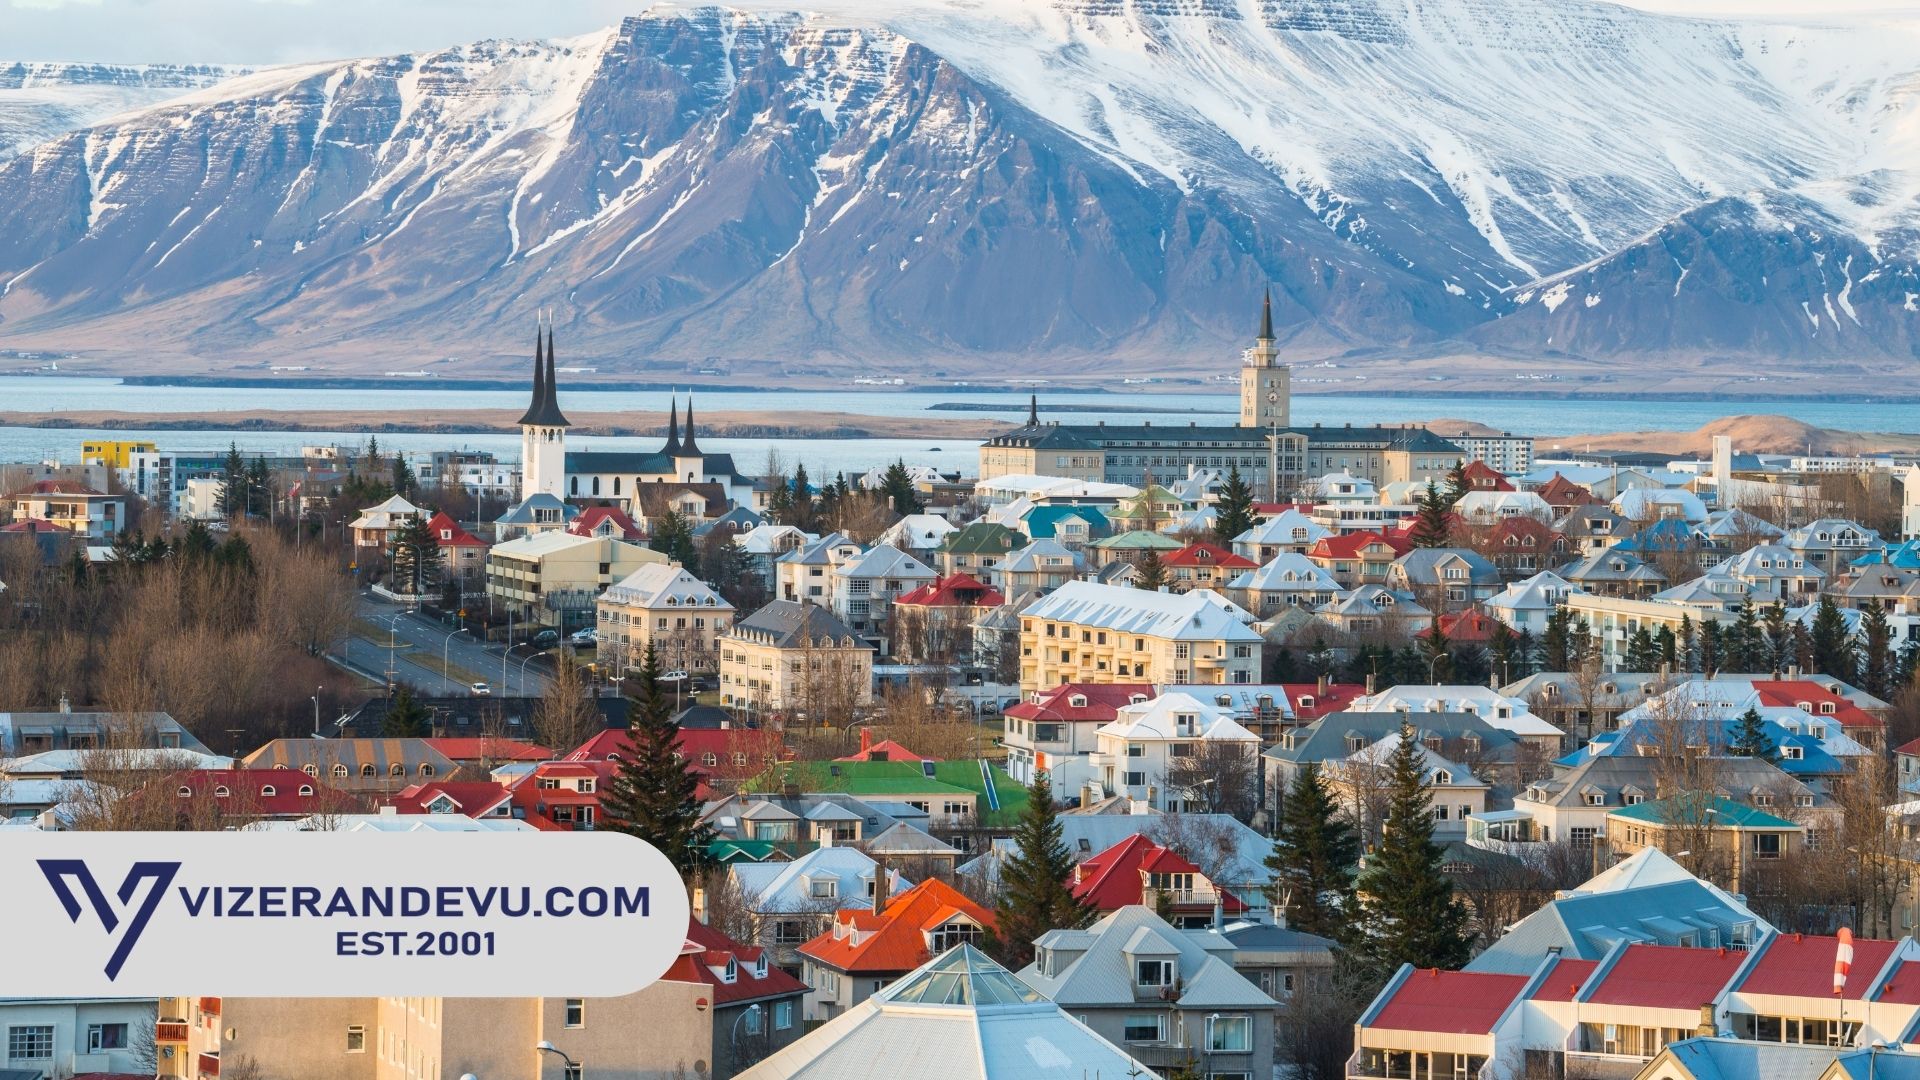 İzlanda Vize Başvuru Maliyeti Ne Kadar?